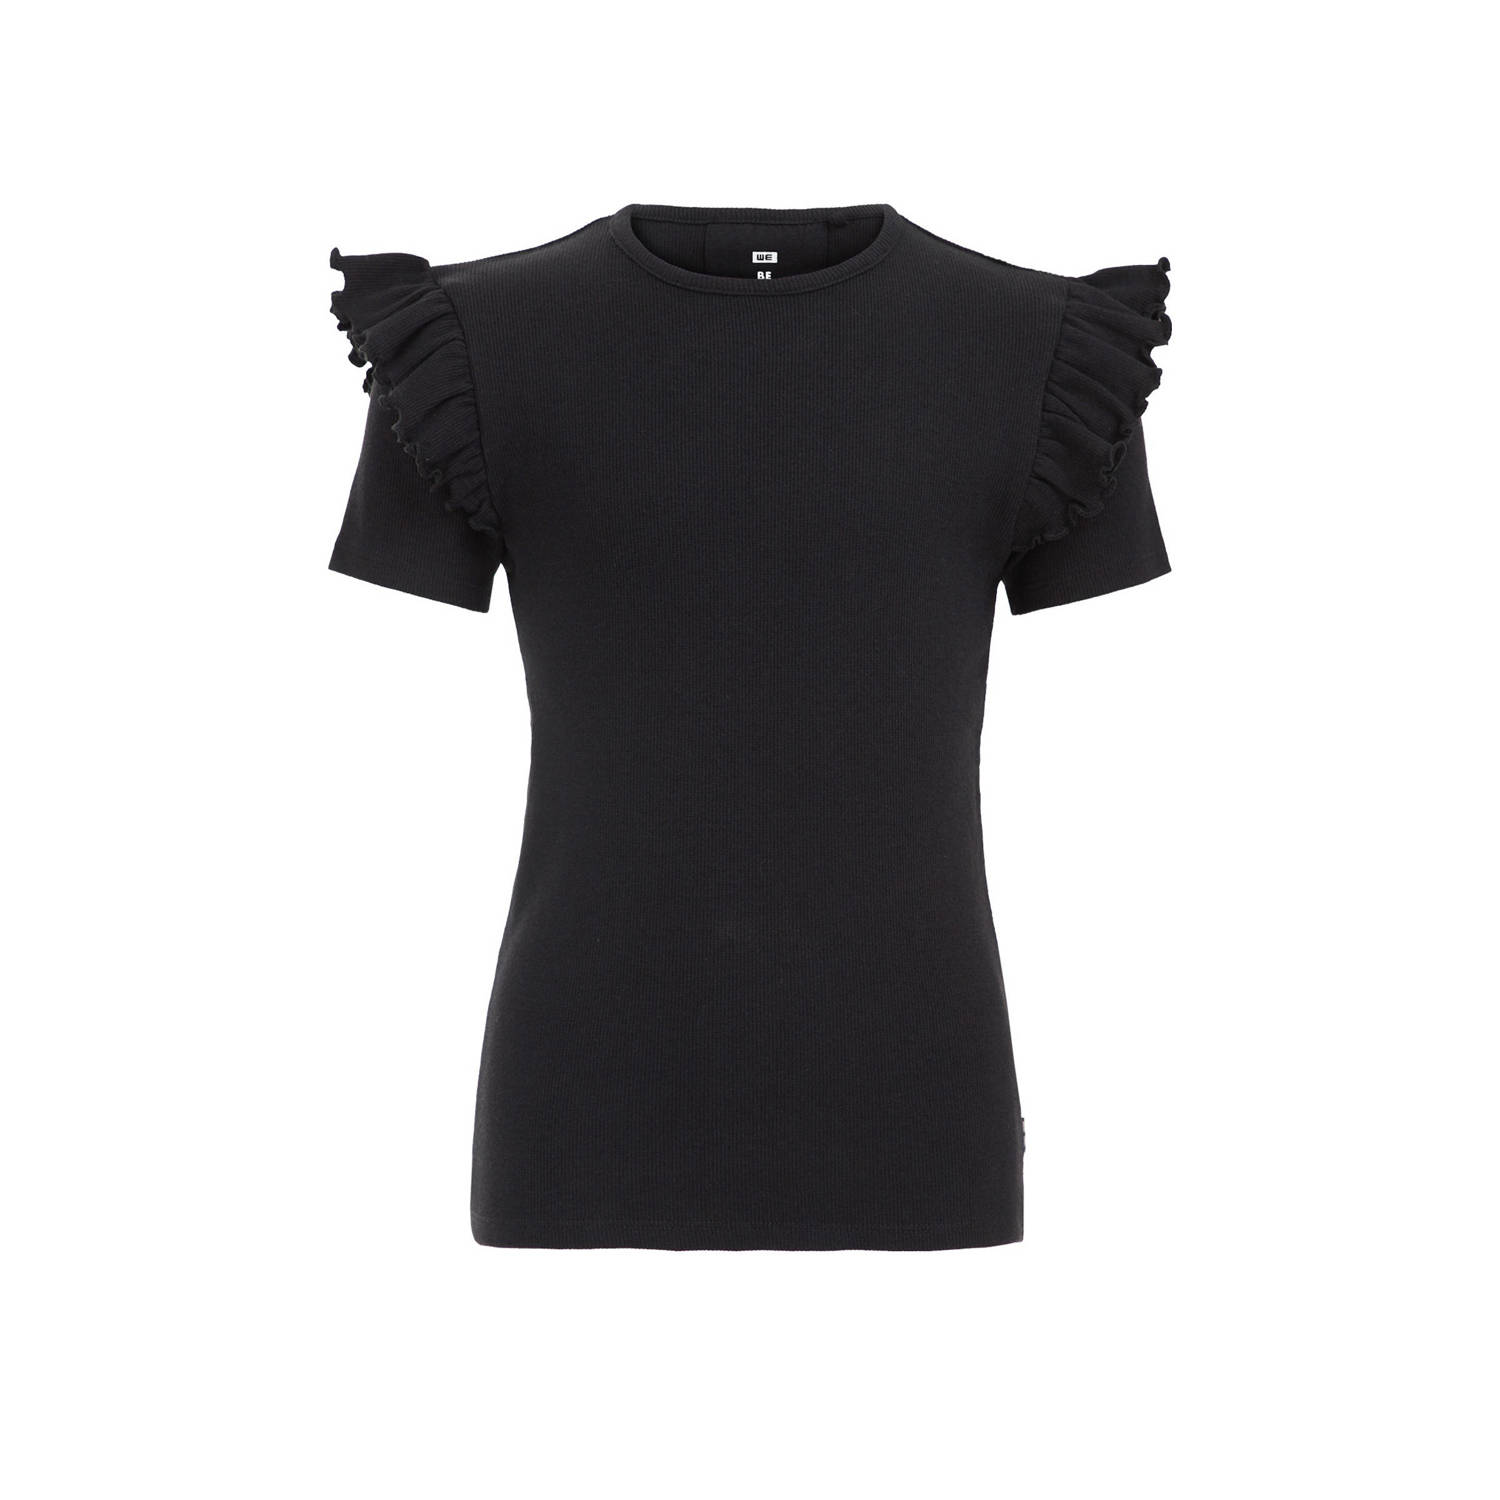 WE Fashion T-shirt black uni Zwart Meisjes Stretchkatoen Ronde hals Effen 110 116